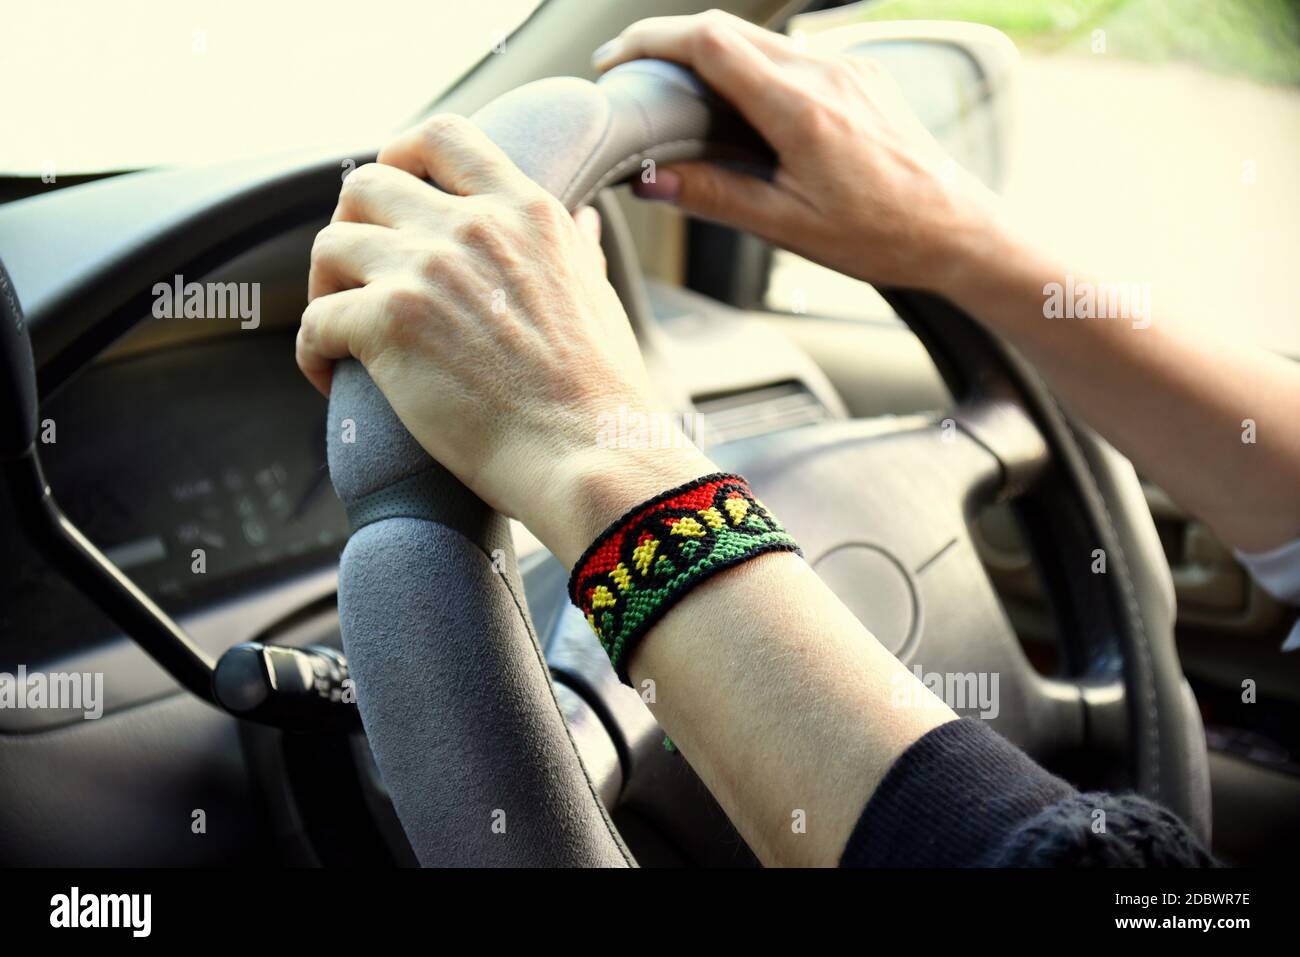 Handgemachtes DIY Freundschaftsarmband mit Rasta Flag-Muster mit einem Friedenssymbol am Handgelenk der Frauen. Hände, die das Lenkrad im Fahrzeug halten. Stockfoto